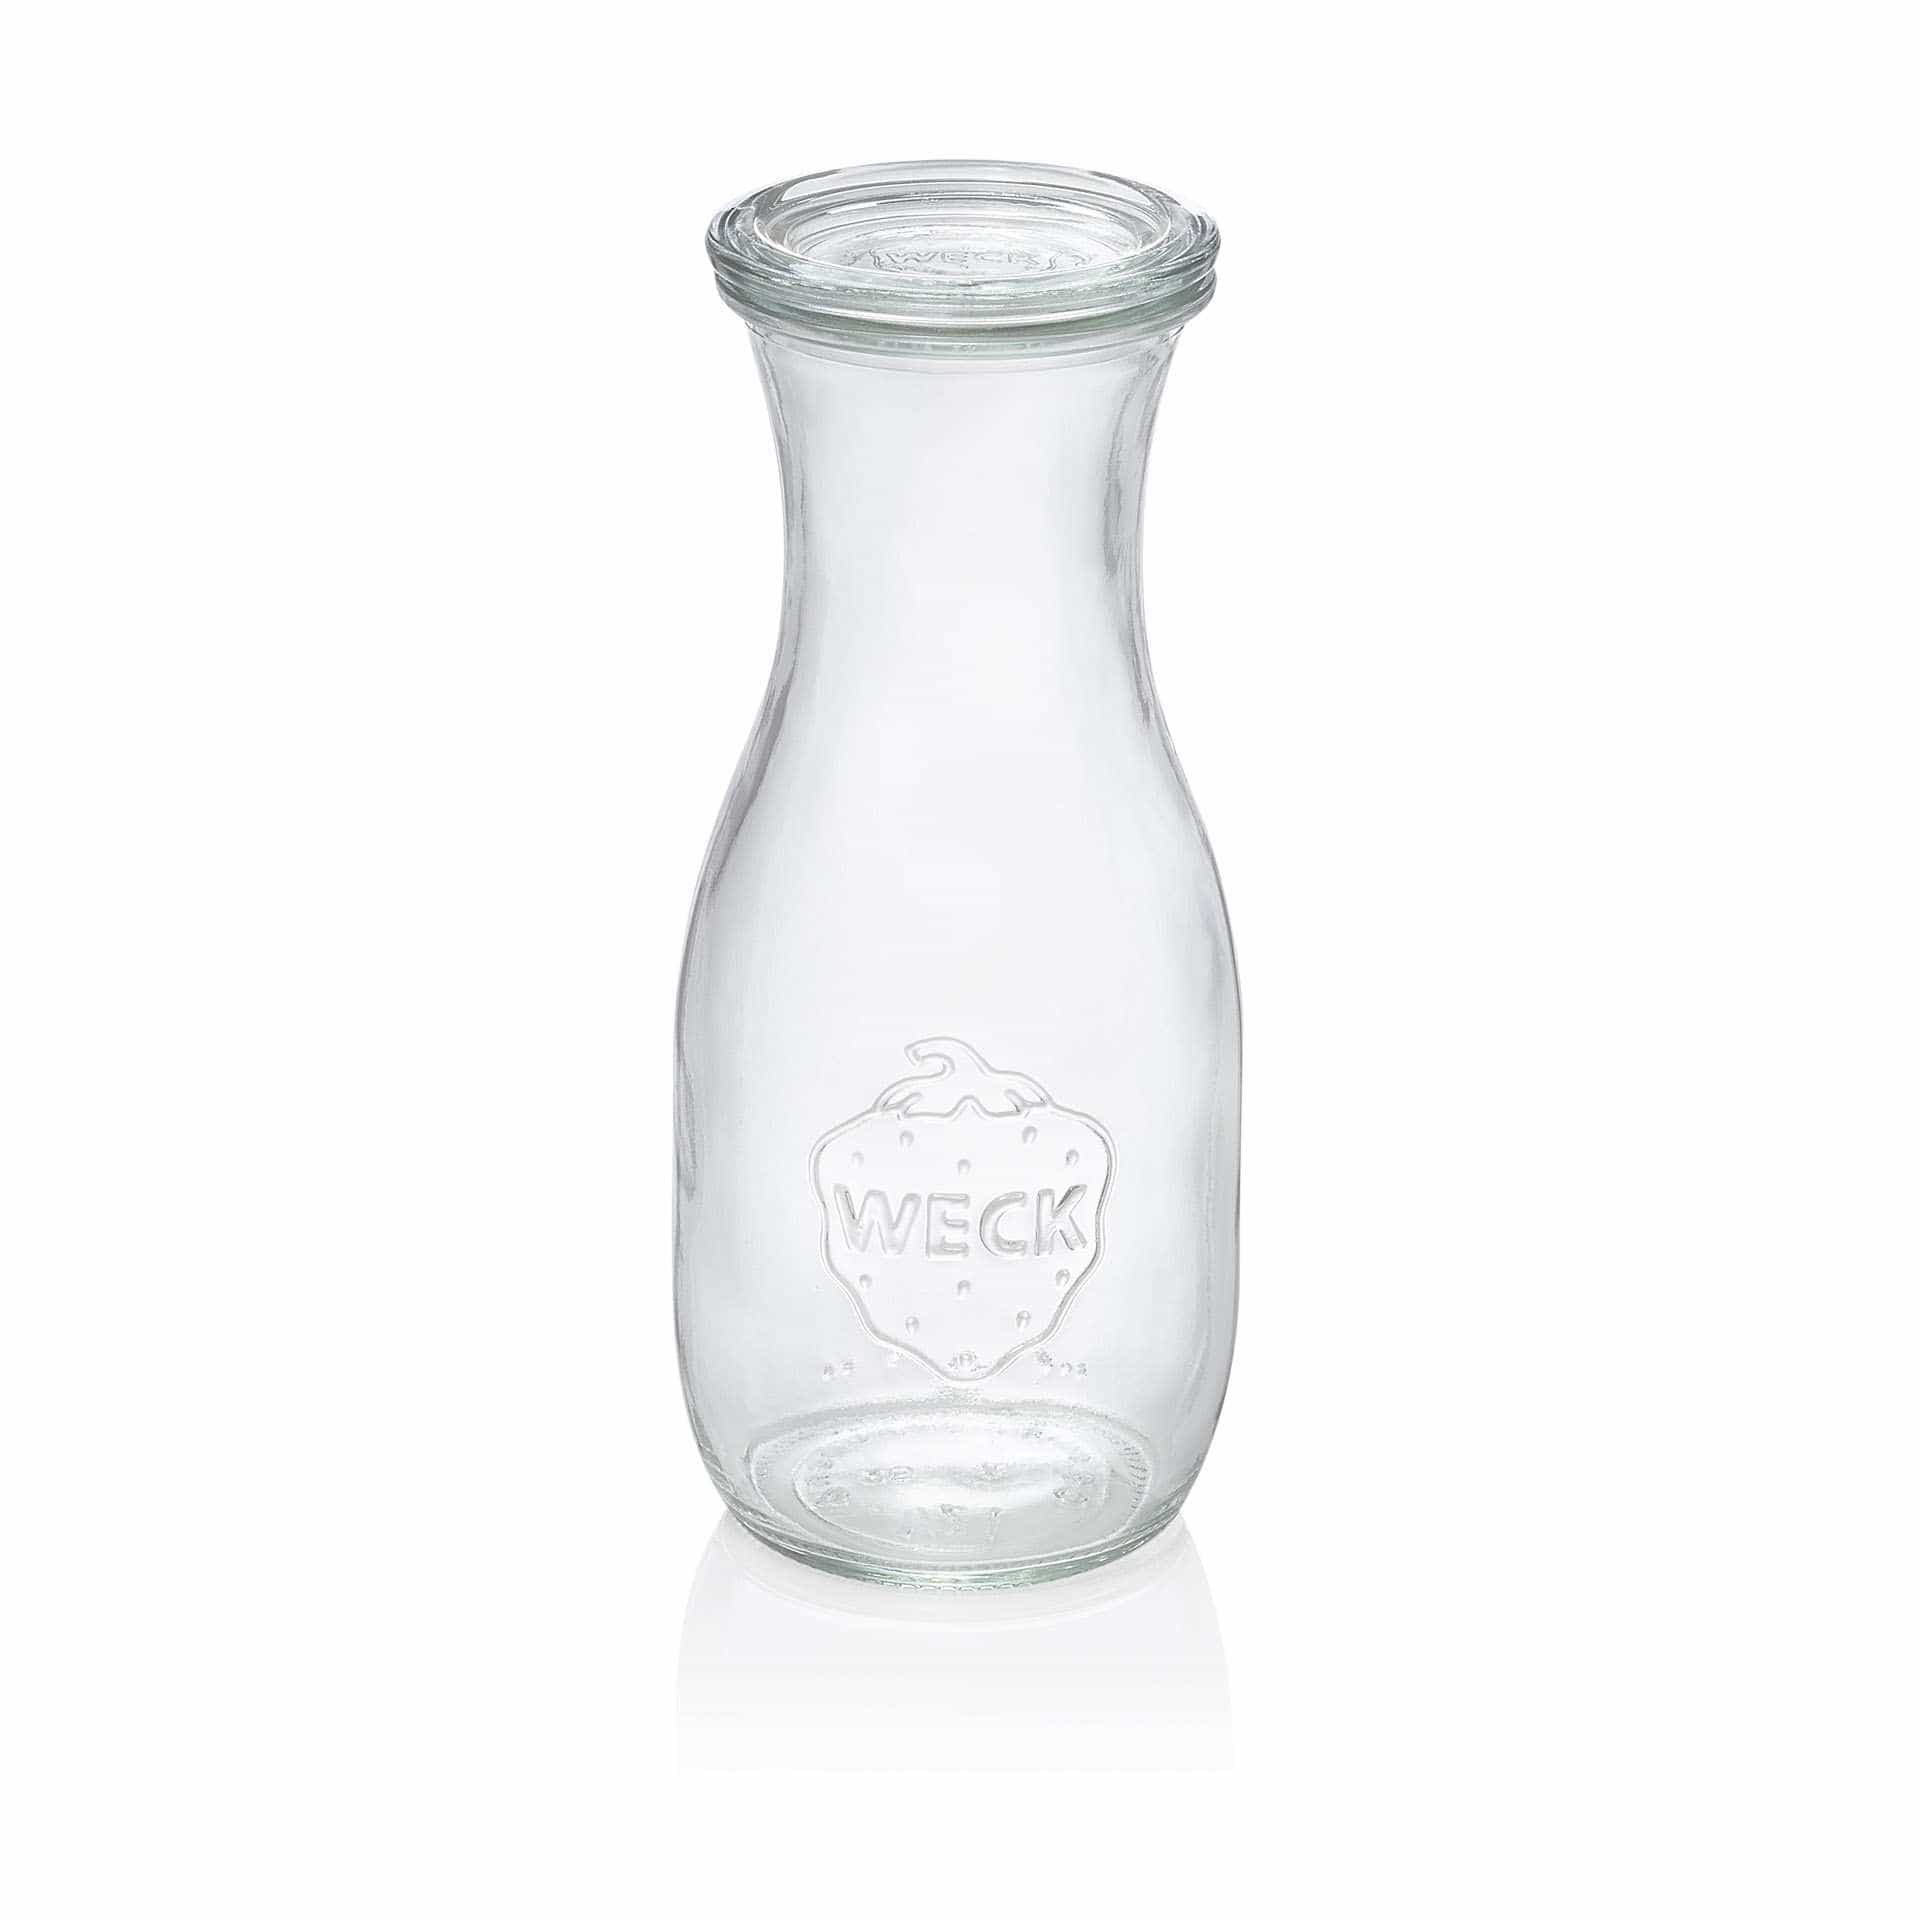 Saftflasche - Set á 6 Stück - Serie Bottle - Abm. 18,4 cm - Ø oben / unten 6,0 / 7,9 cm - Inhalt 0,53 l - Glas - 764-A